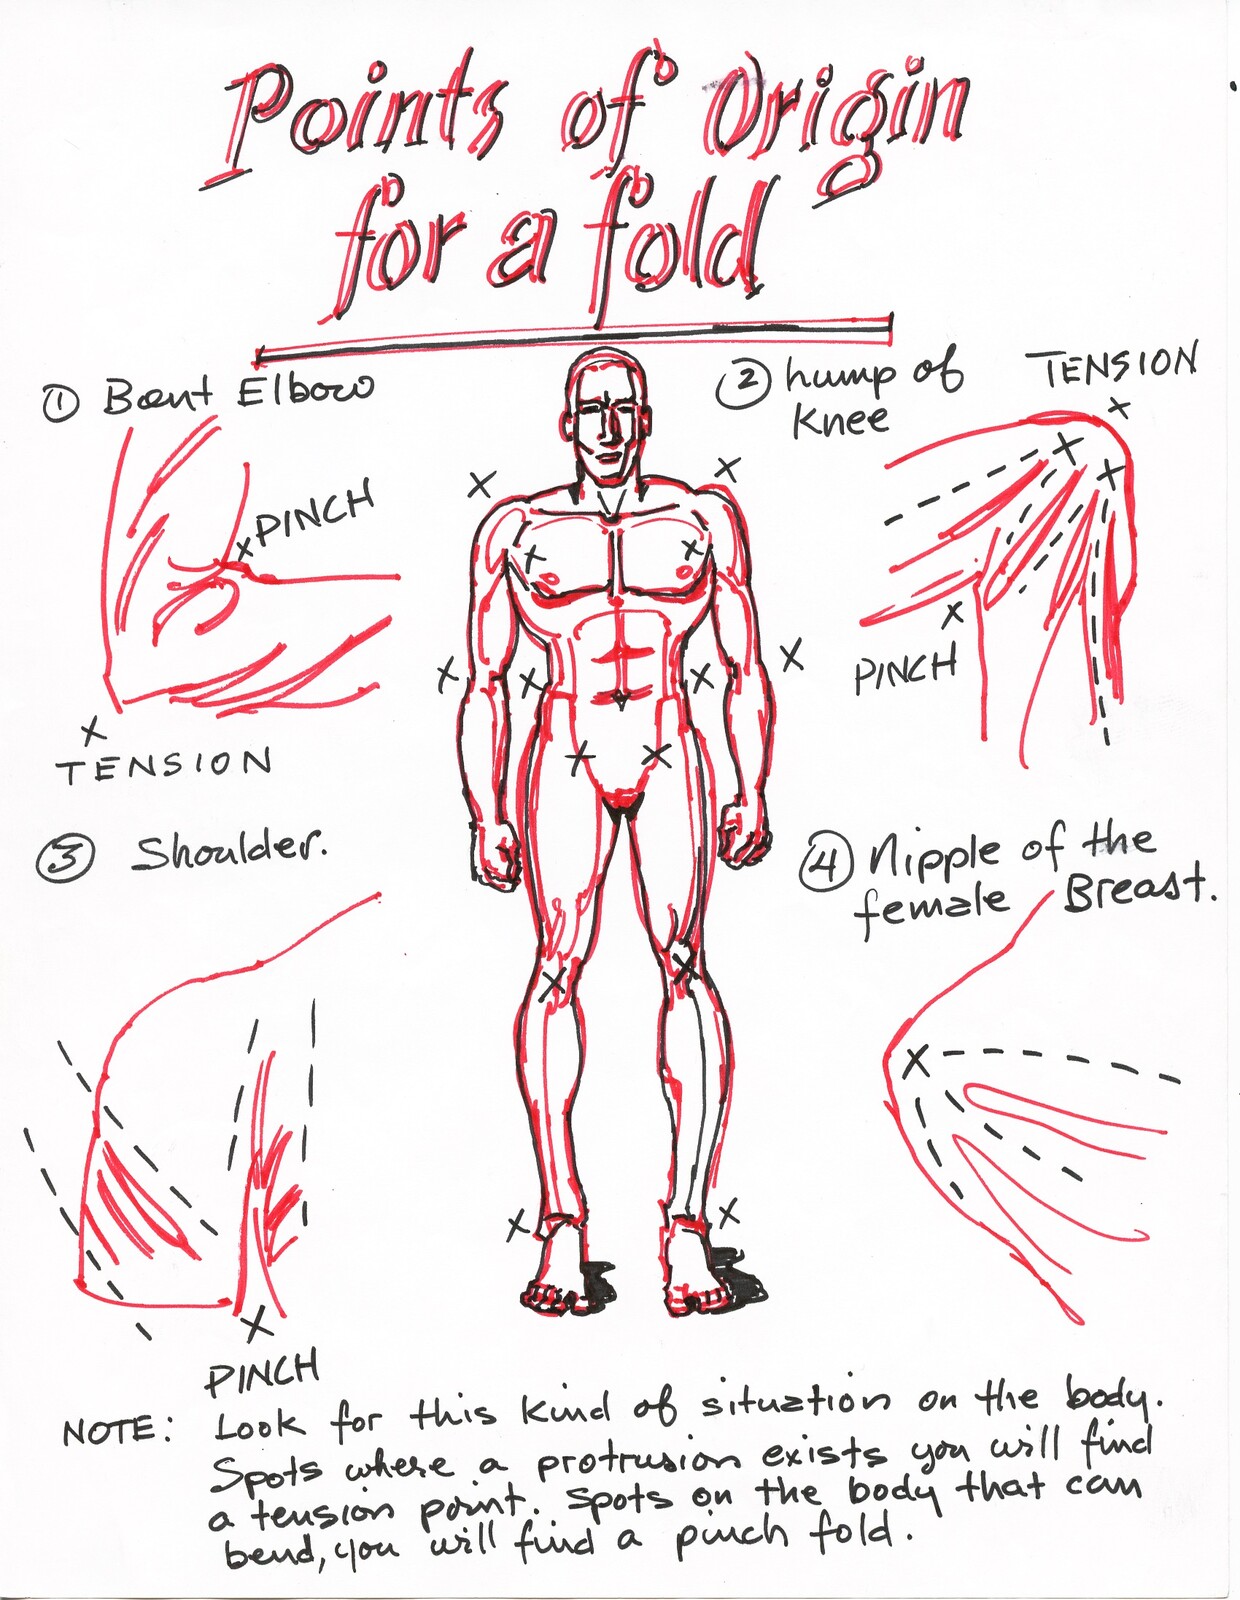 Where folds originate.